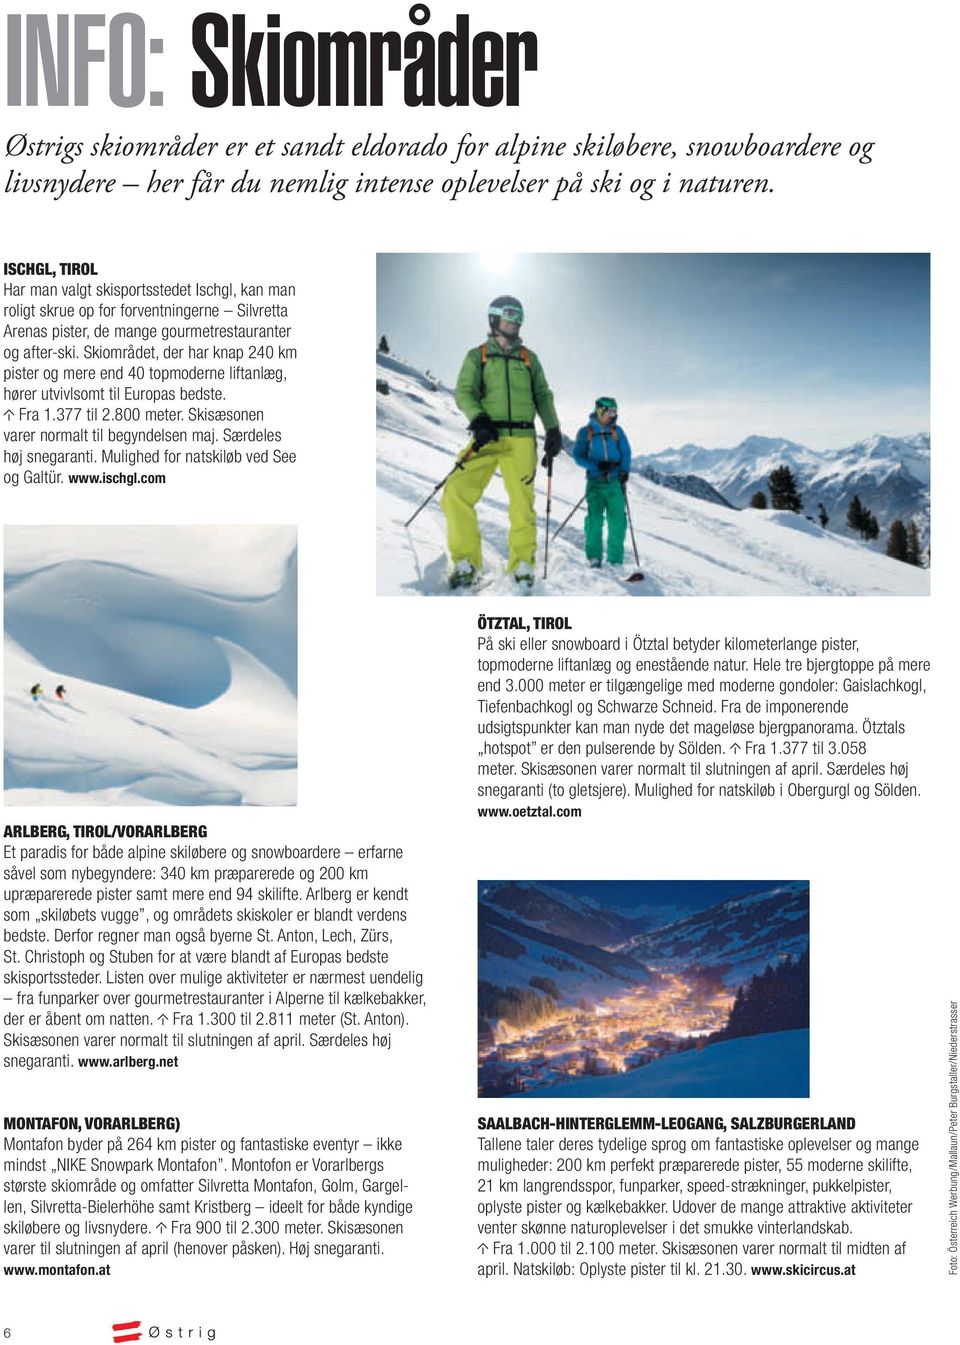 Skiområdet, der har knap 240 km pister og mere end 40 topmoderne liftanlæg, hører utvivlsomt til Europas bedste. Fra 1.377 til 2.800 meter. Skisæsonen varer normalt til begyndelsen maj.